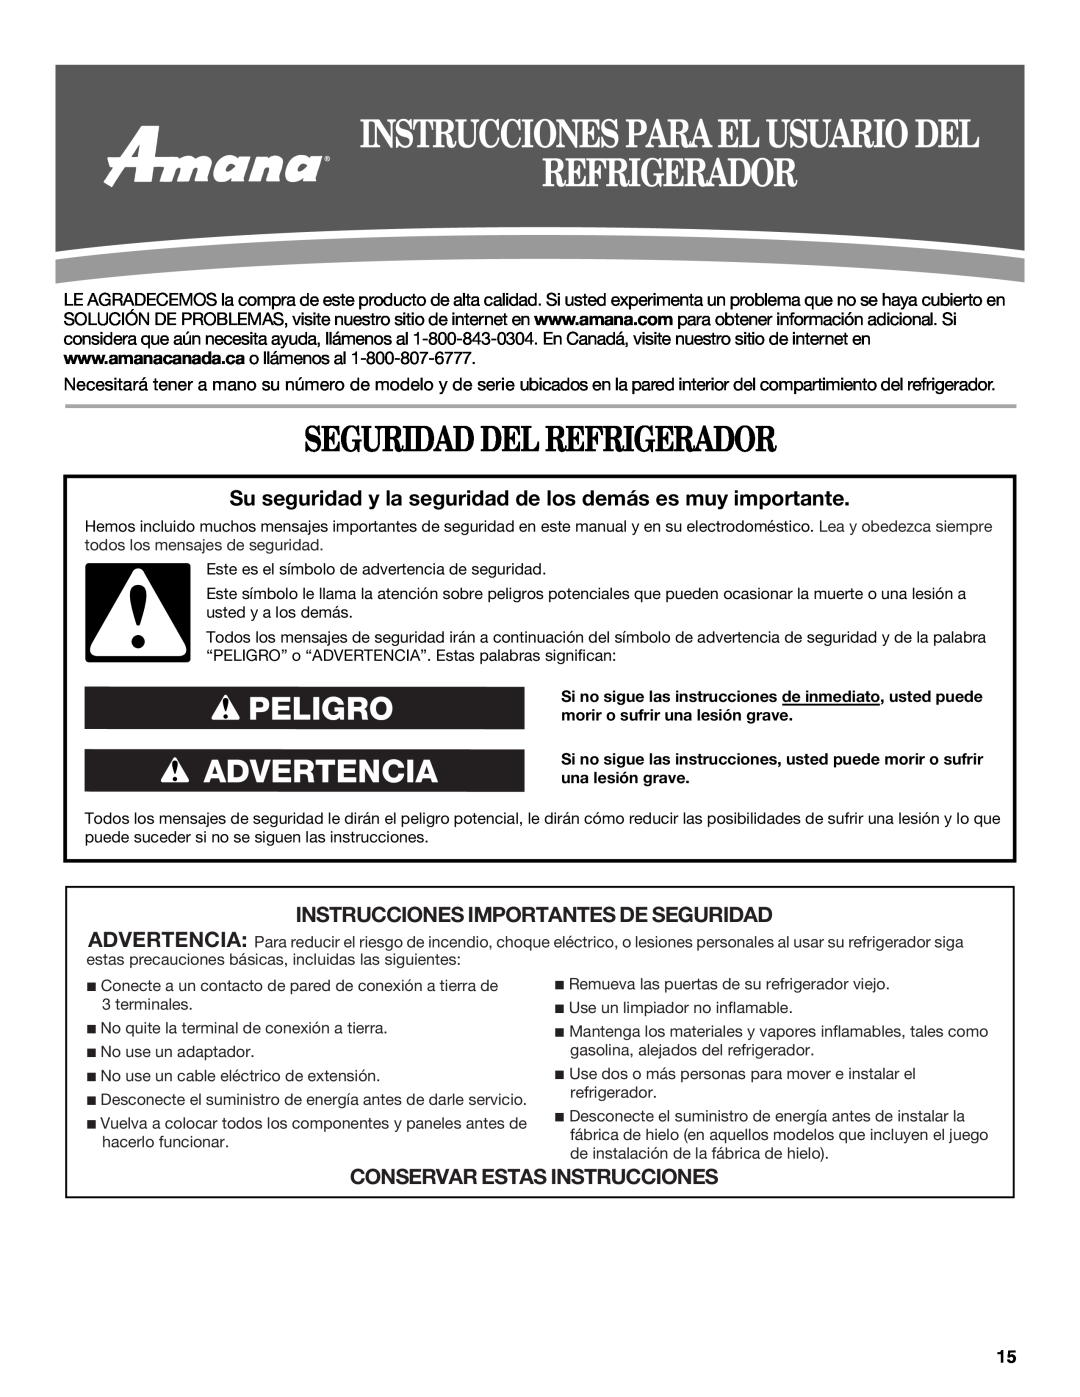 Amana W10214254A Seguridad Del Refrigerador, Instrucciones Para El Usuario Del, Peligro Advertencia 